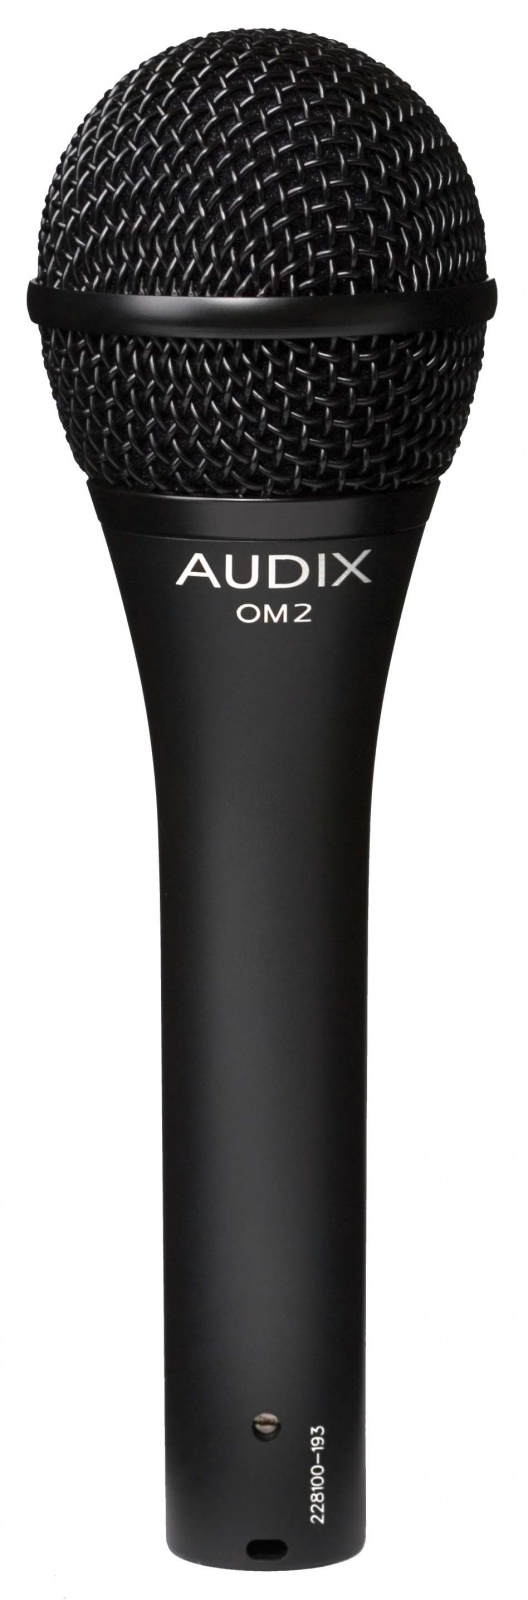 AUDIX OM2  Динамический гиперкардиоидный микрофон, 50 Гц - 16 кГц, многоцелевой микрофон